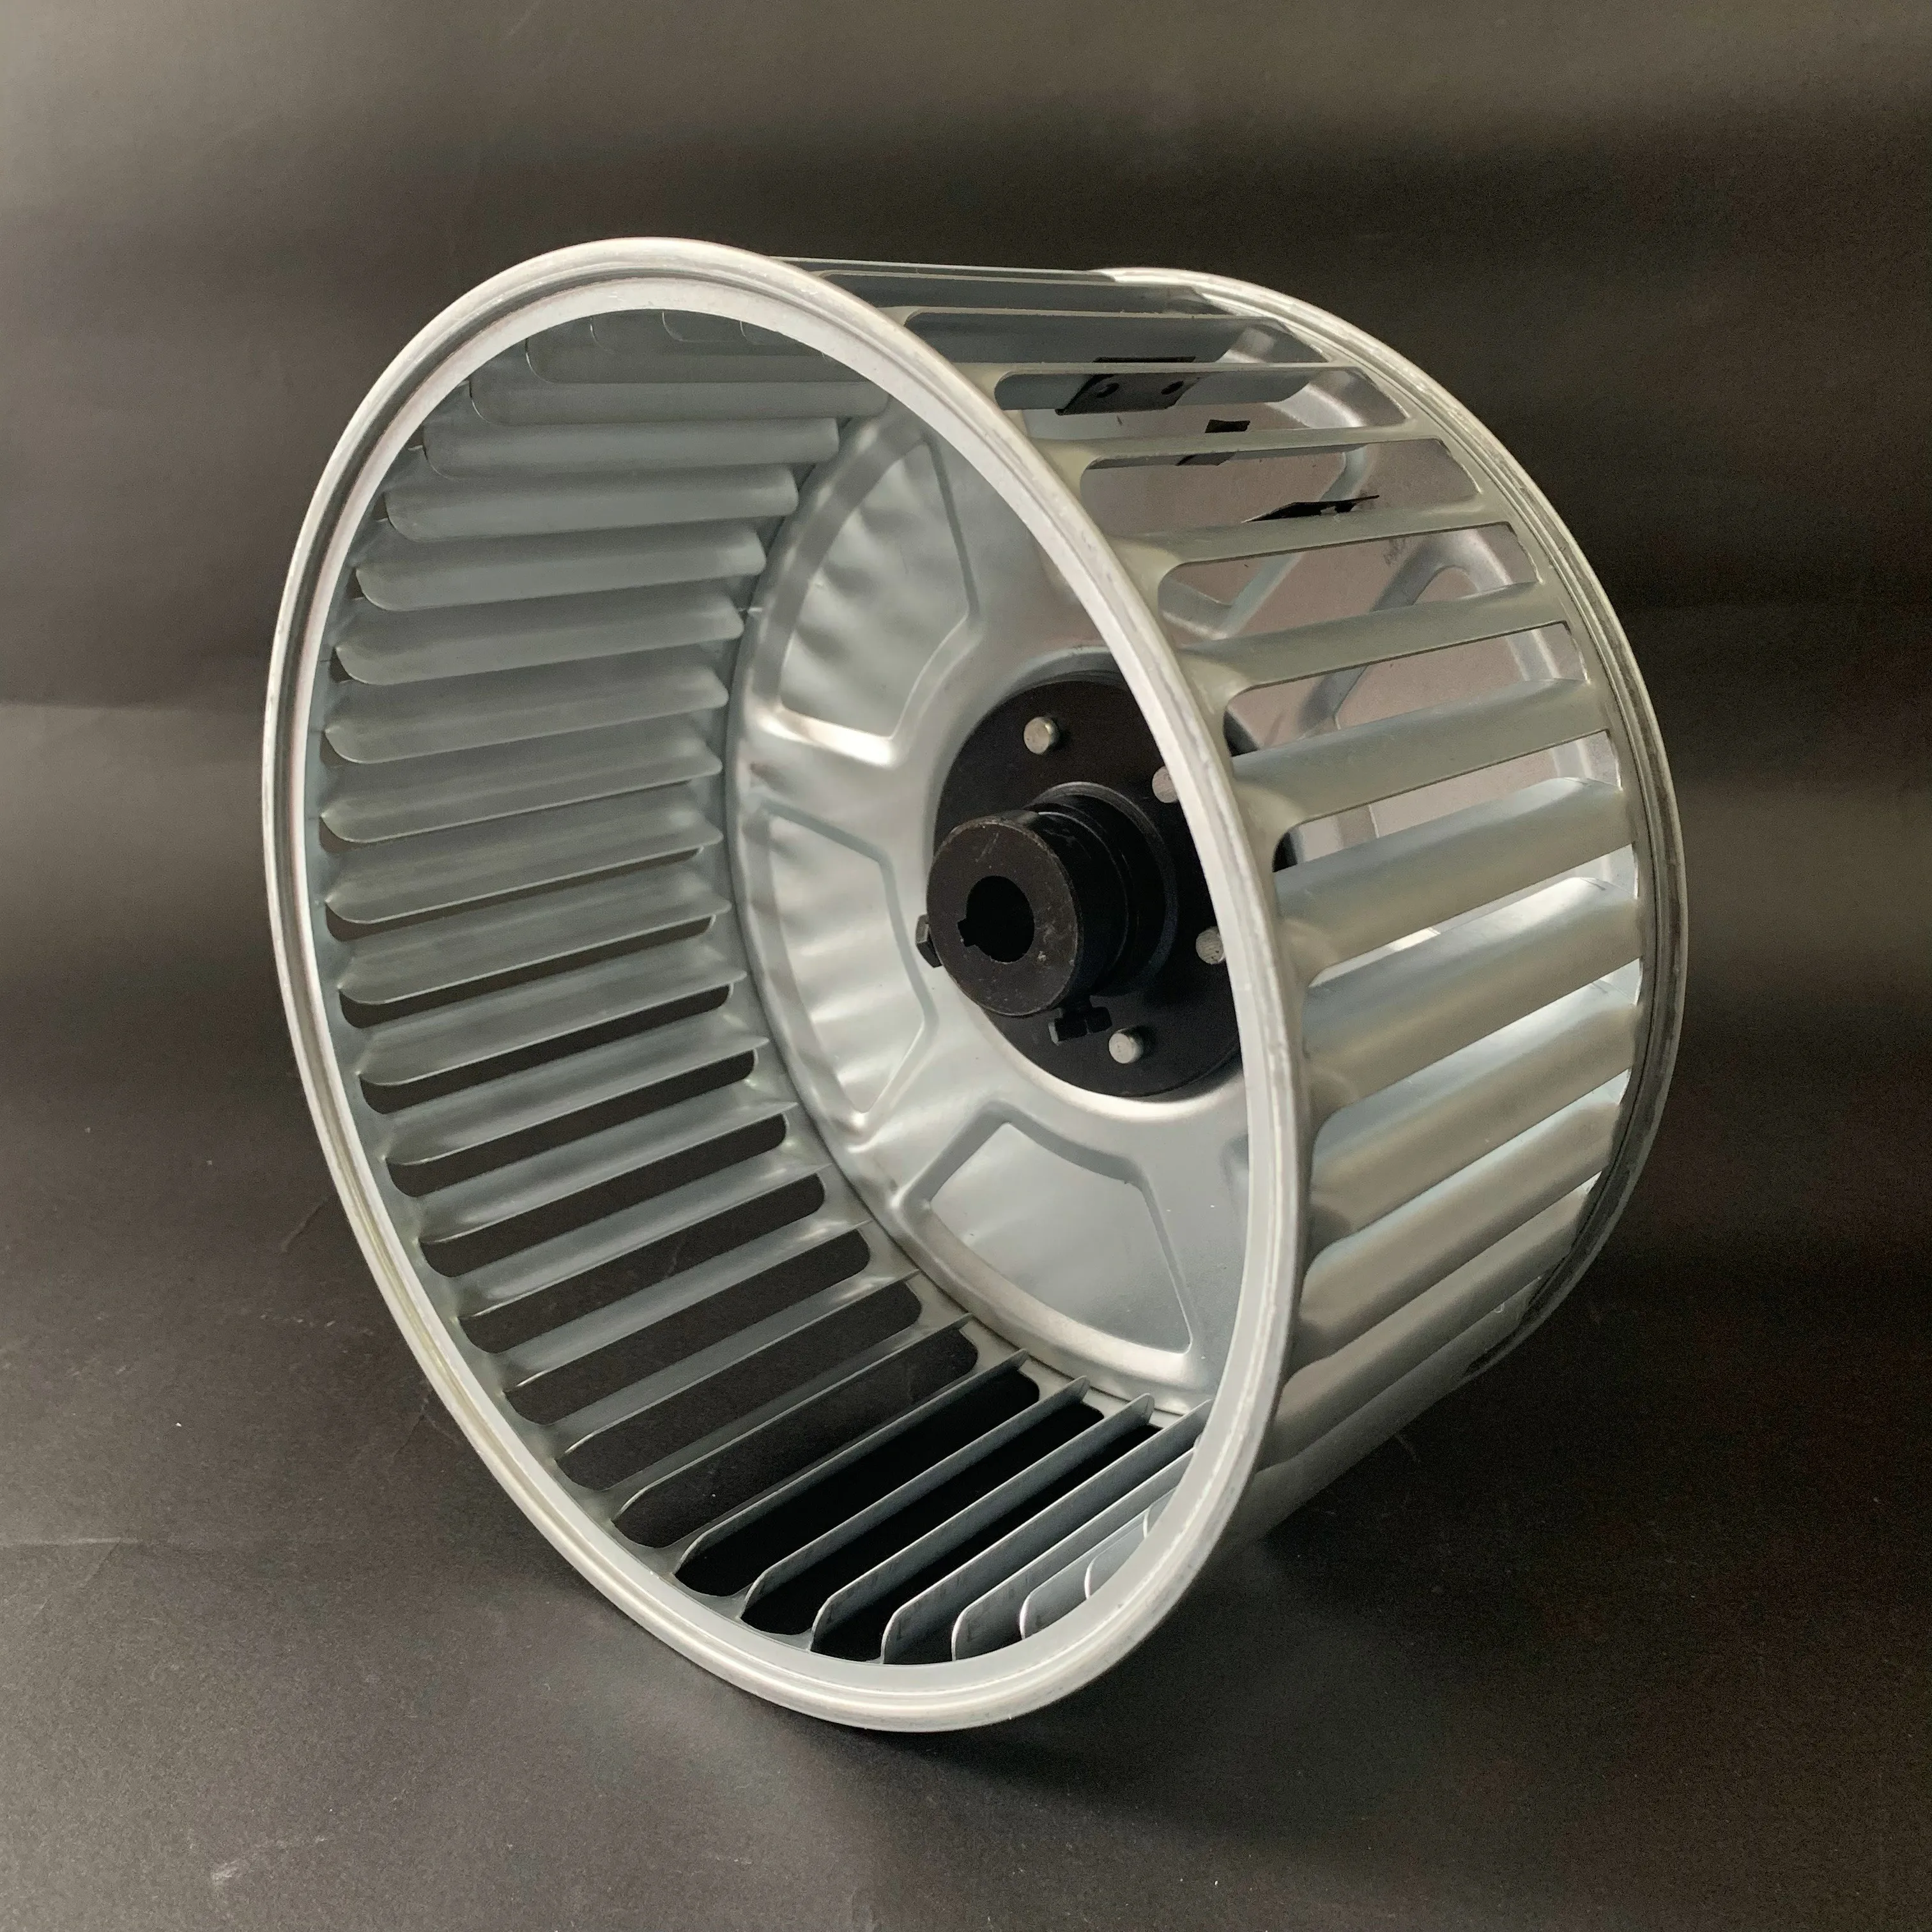 Novo design impulsores ventilador centrífugo roda de vento de aço inoxidável tamanho padrão completo de rodas para detalhes de venda